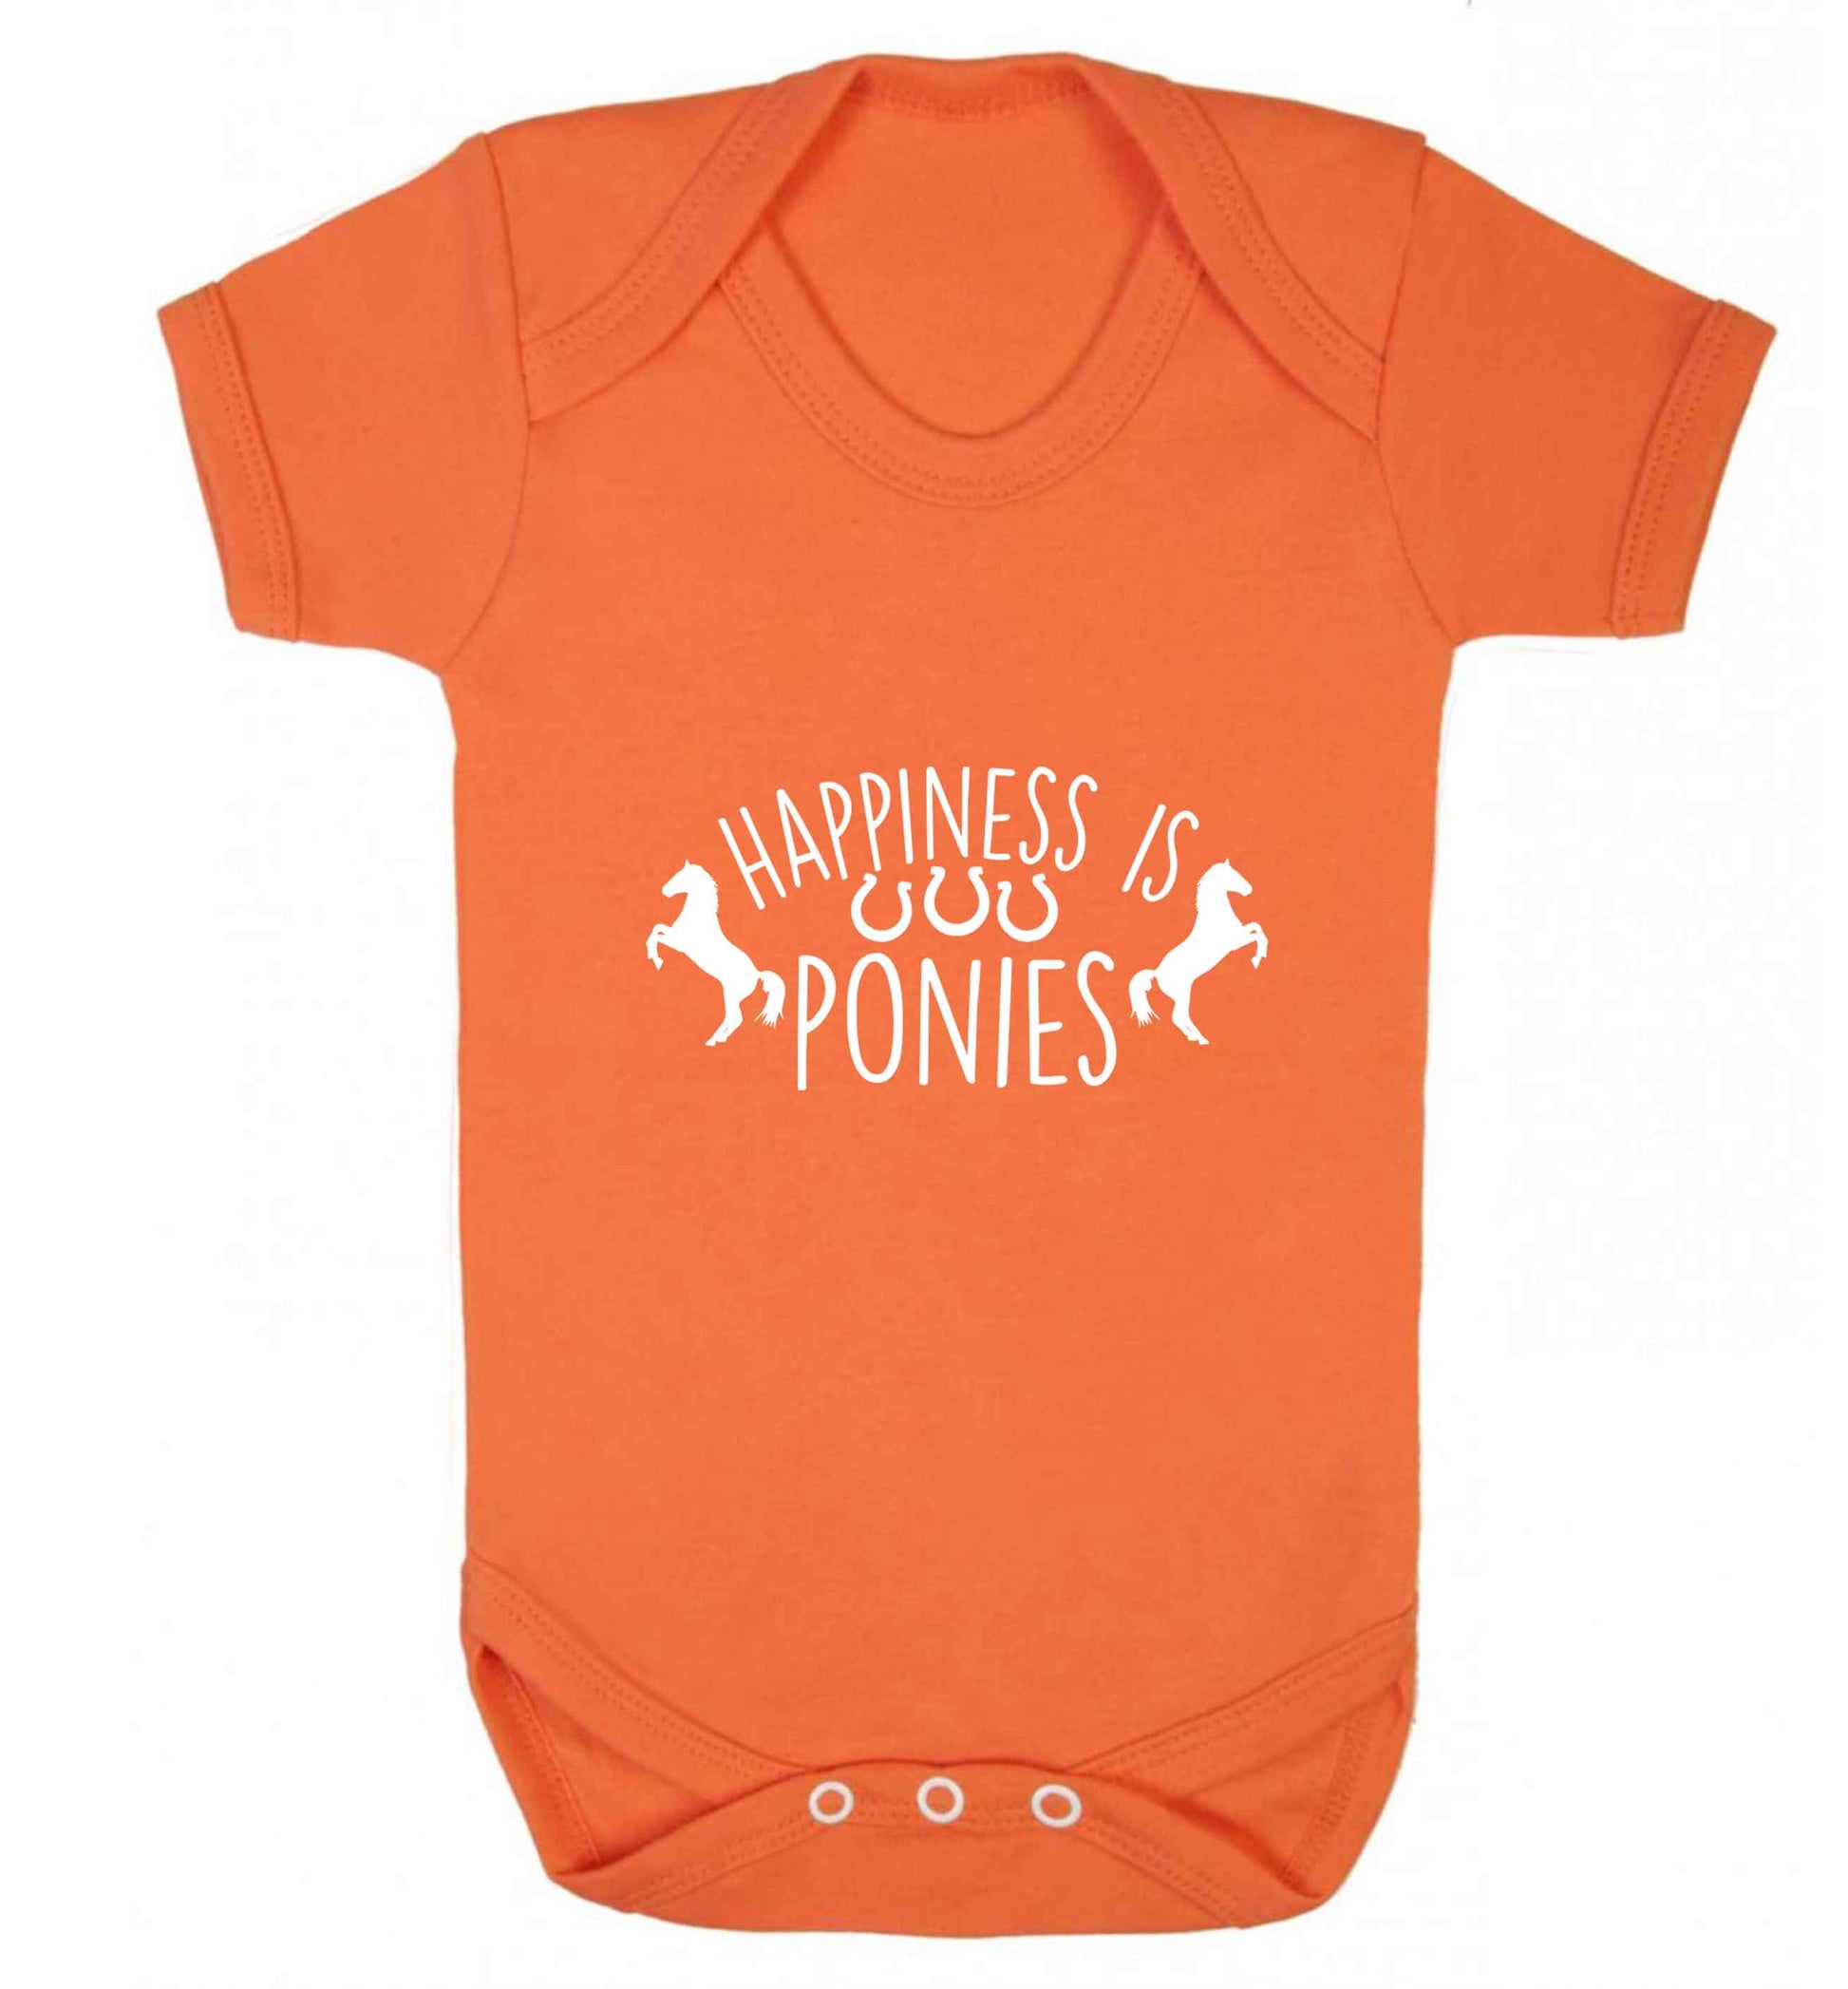 Happiness is ponies baby vest orange 18-24 months